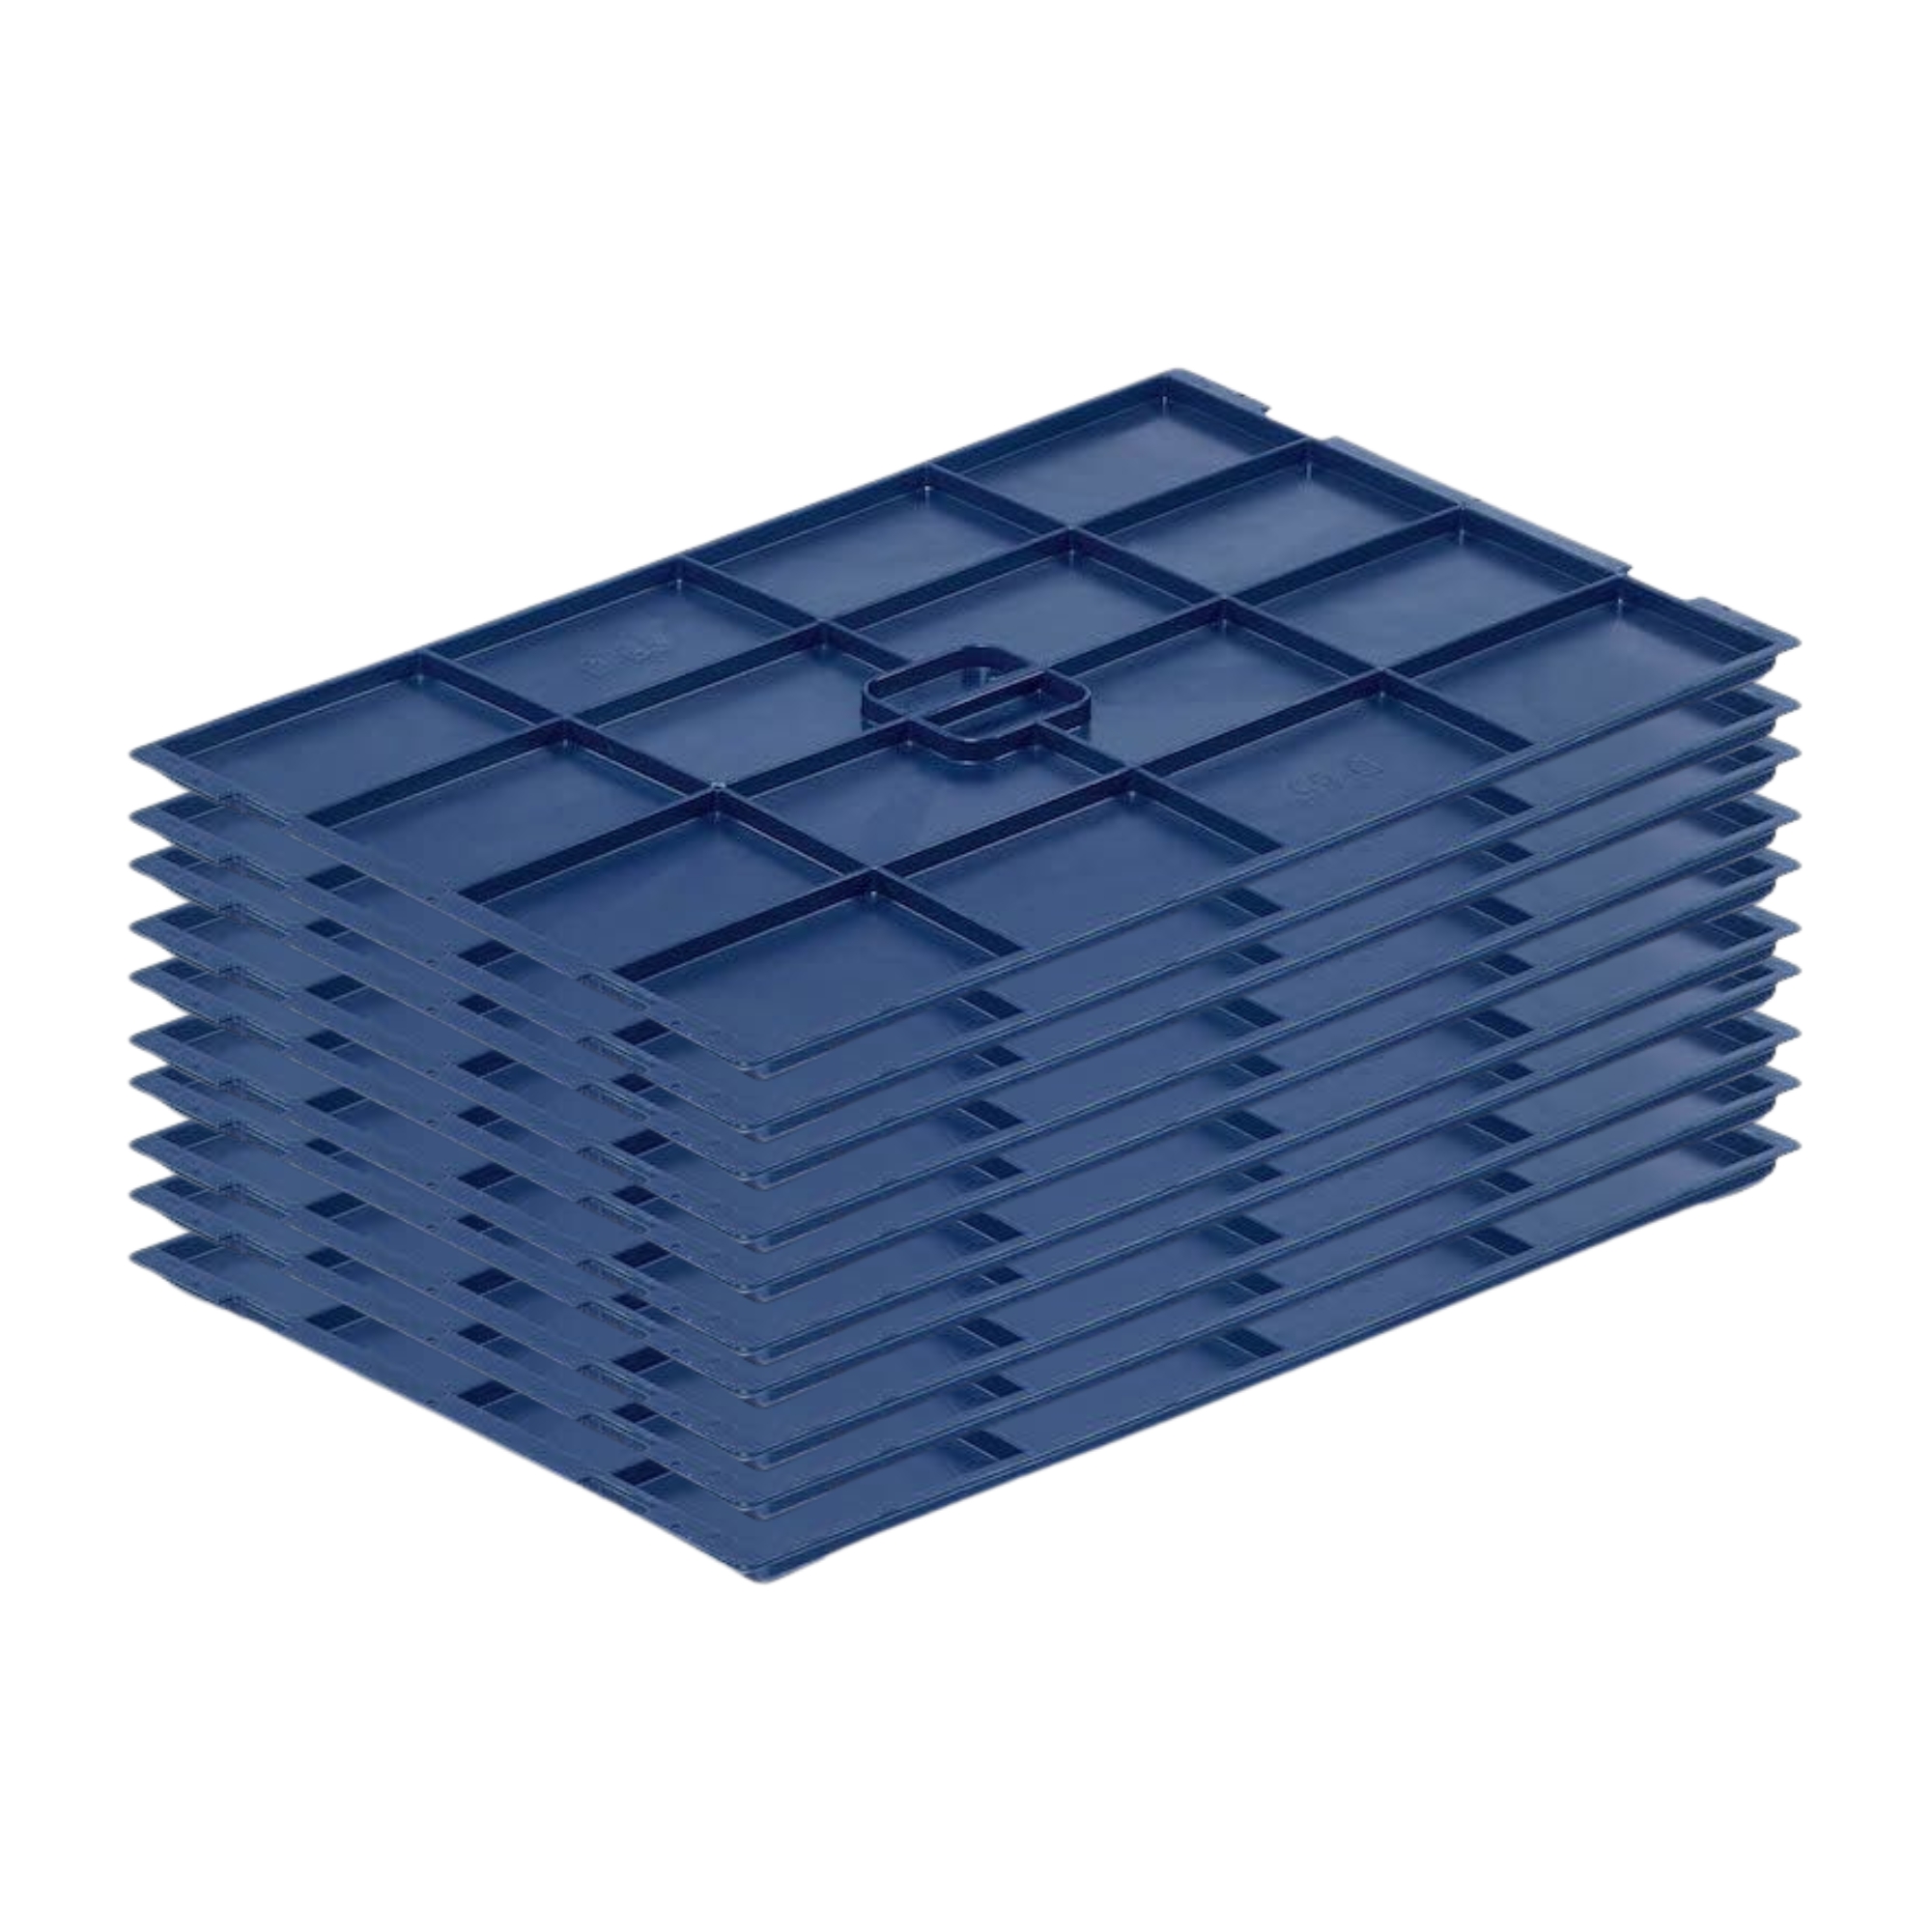 Auflagedeckel für VDA KLT Kleinladungsträger mit Verbundboden | BxT 40x60cm | Abdeckung, Deckel, Plombierbar, KLT, Transportbox, Transportbehälter, Stapelbehälter